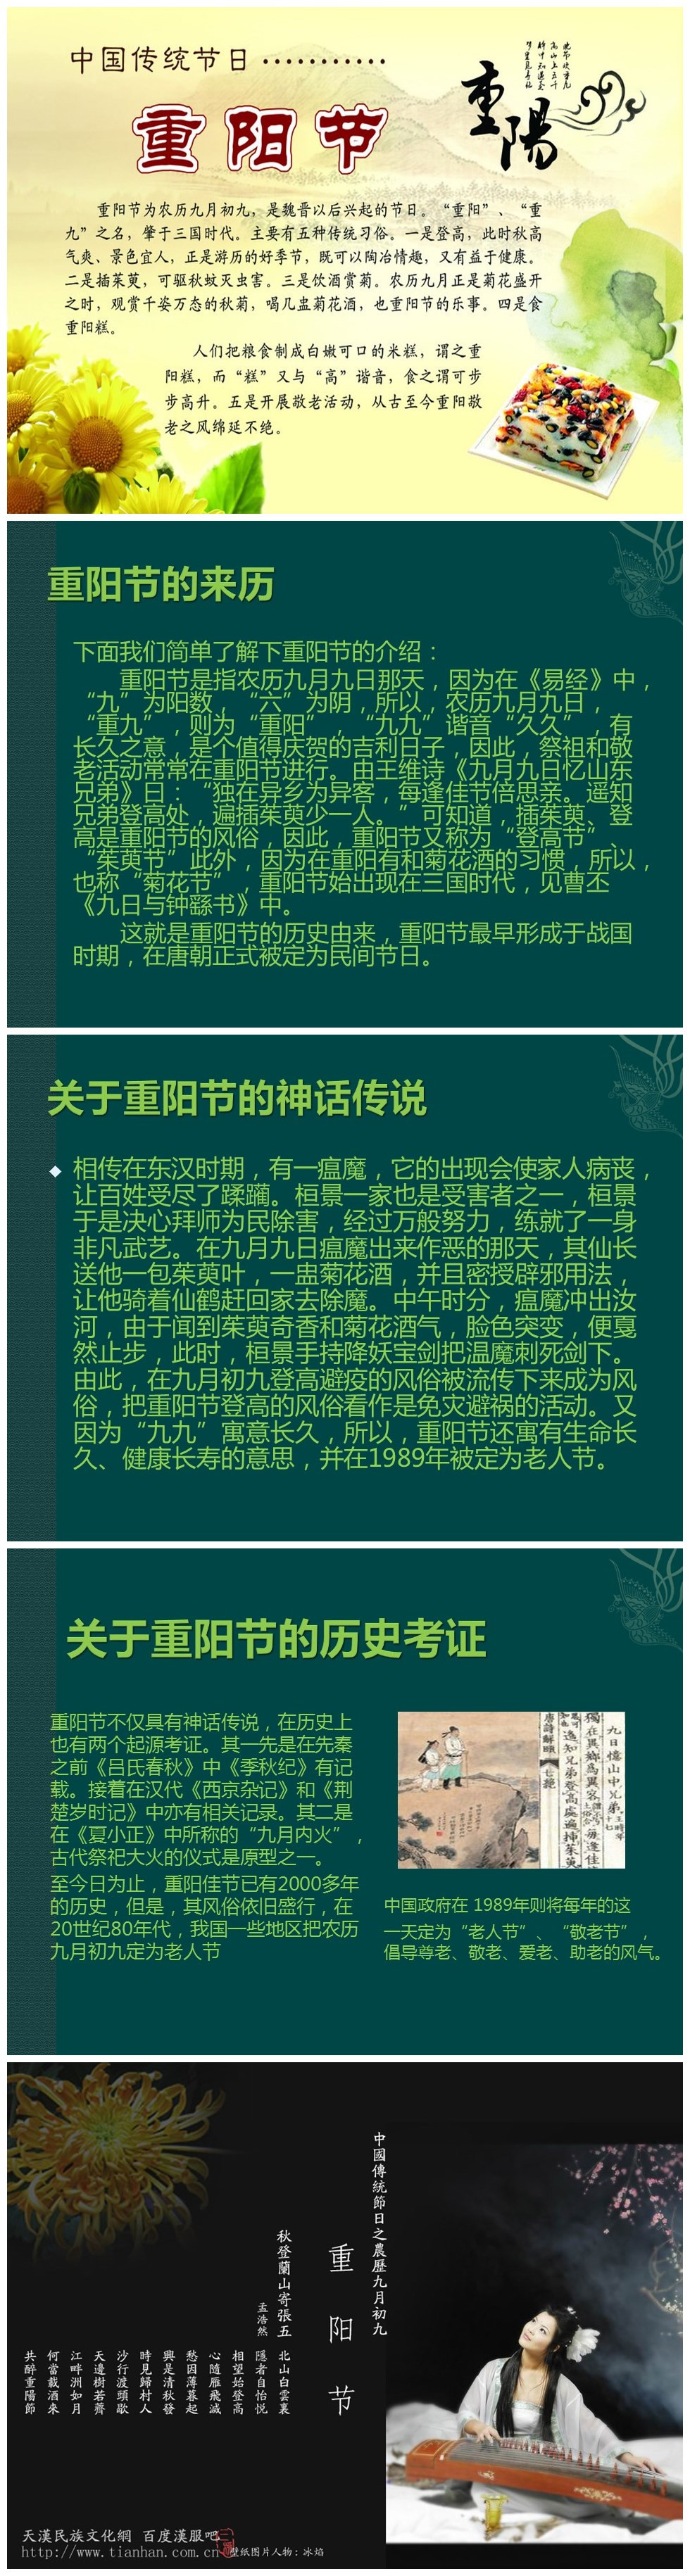 中国传统节日9月9日重阳节PPT模板-聚给网